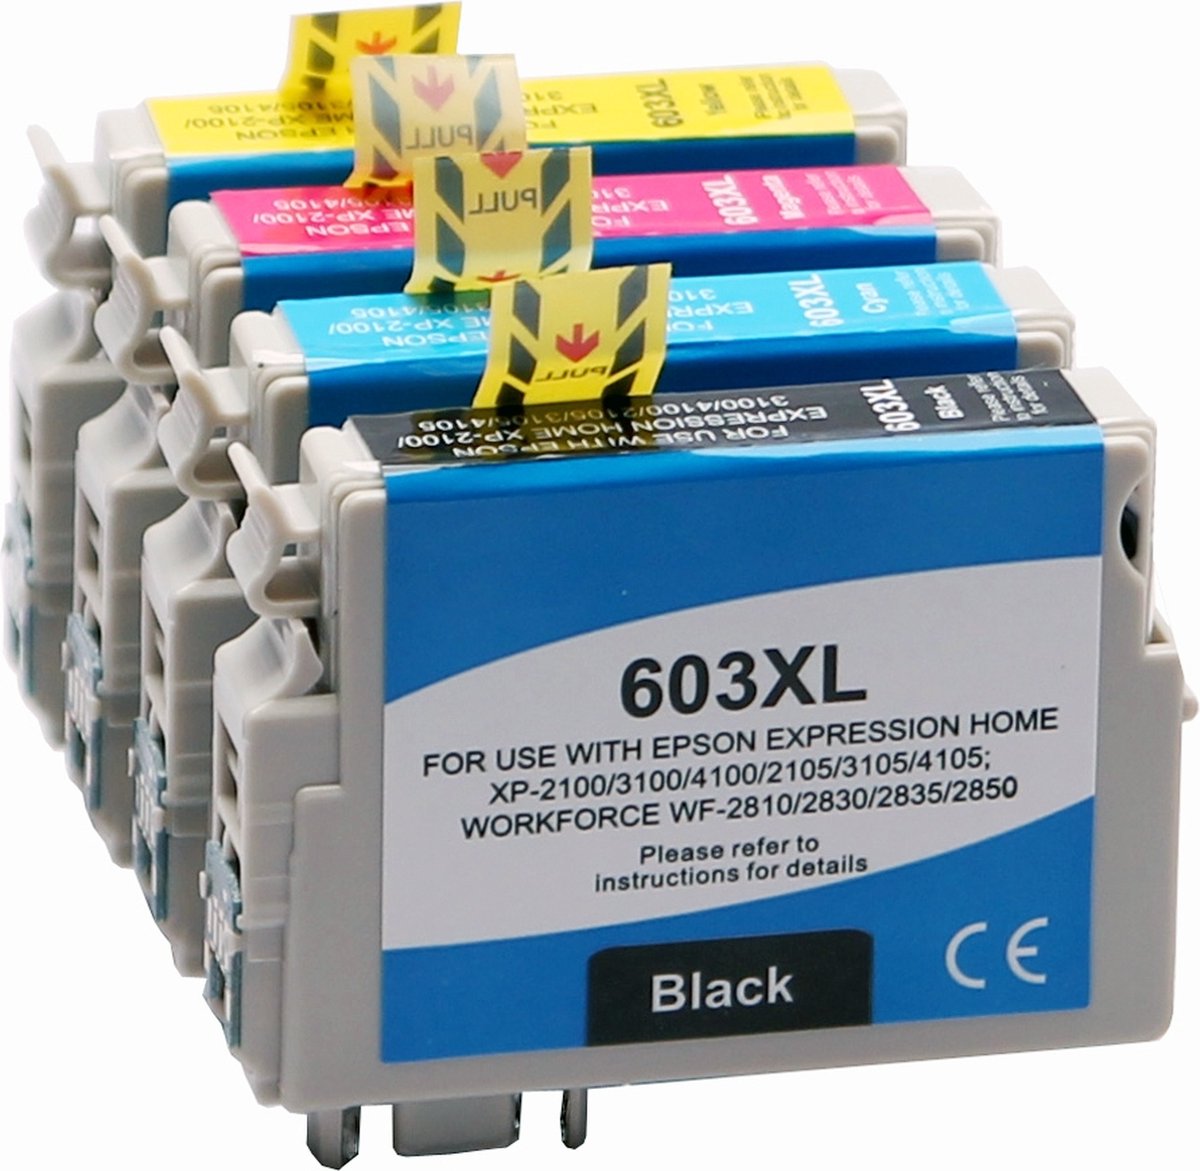 PROMO : Lot de 4 cartouches d'encre compatibles avec Epson 603 XL